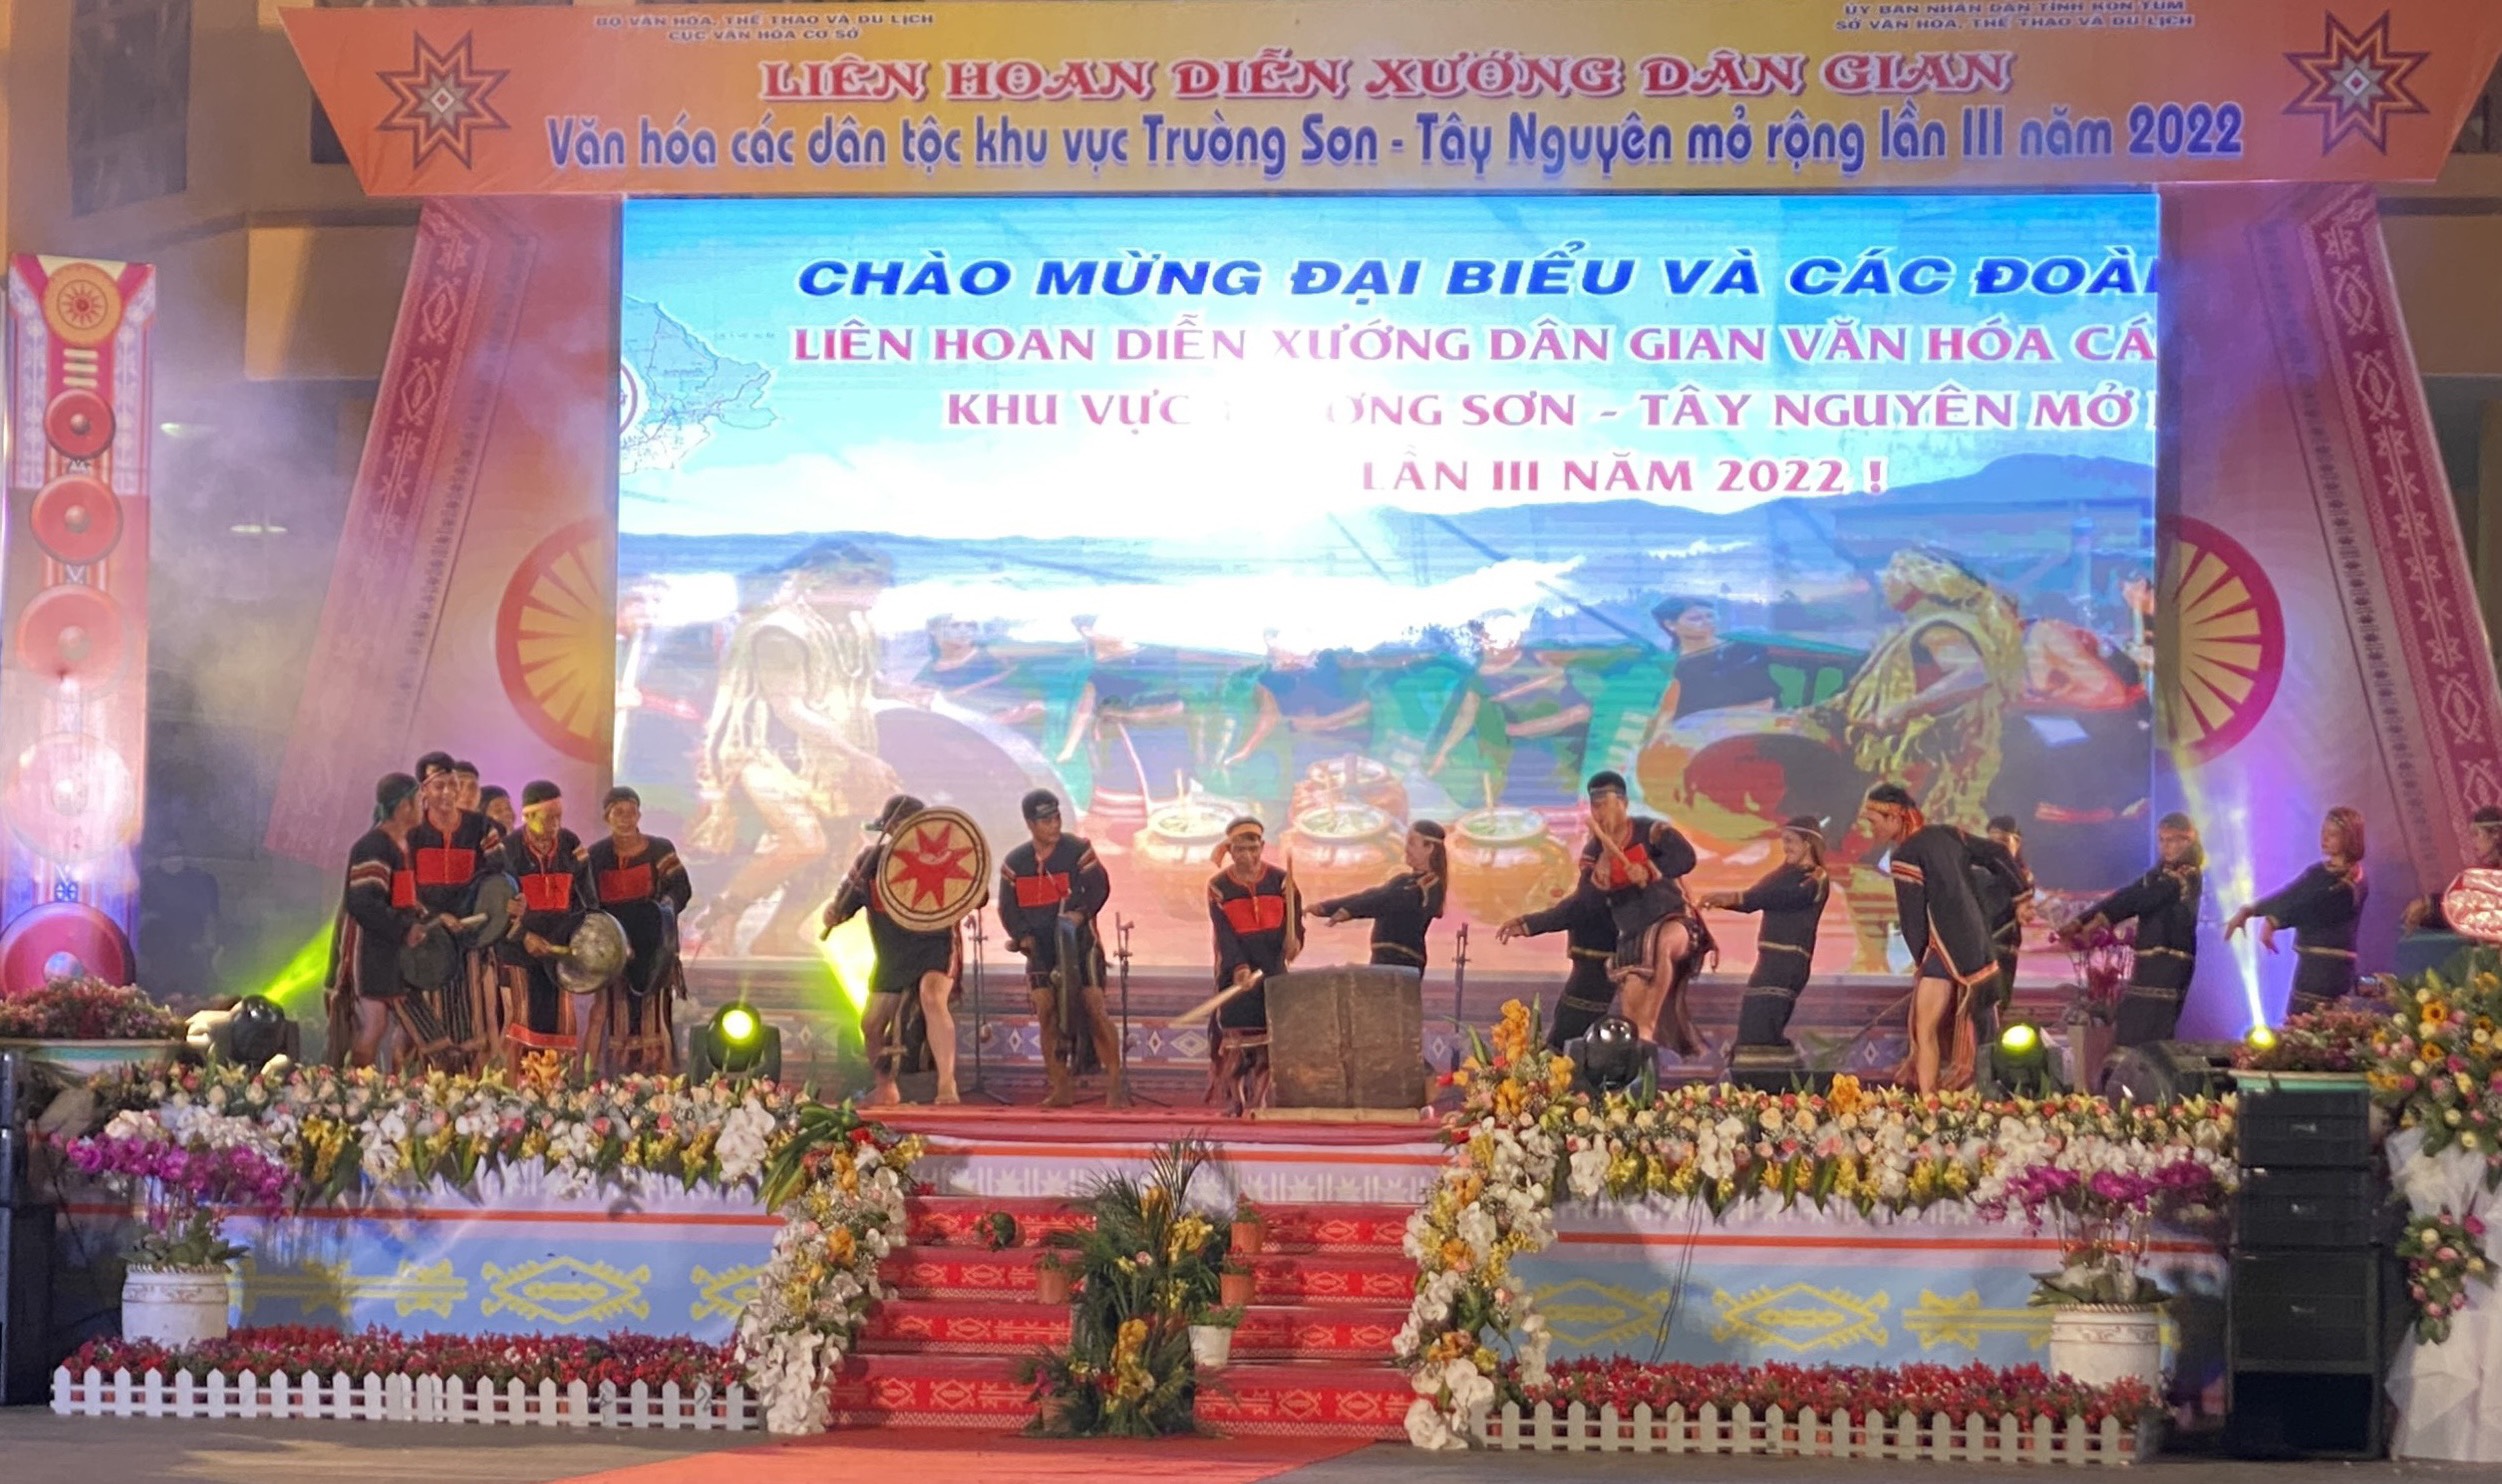 Đắk Lắk tham dự Liên hoan Diễn xướng dân gian văn hóa các dân tộc khu vực Trường Sơn - Tây Nguyên lần thứ III - năm 2022